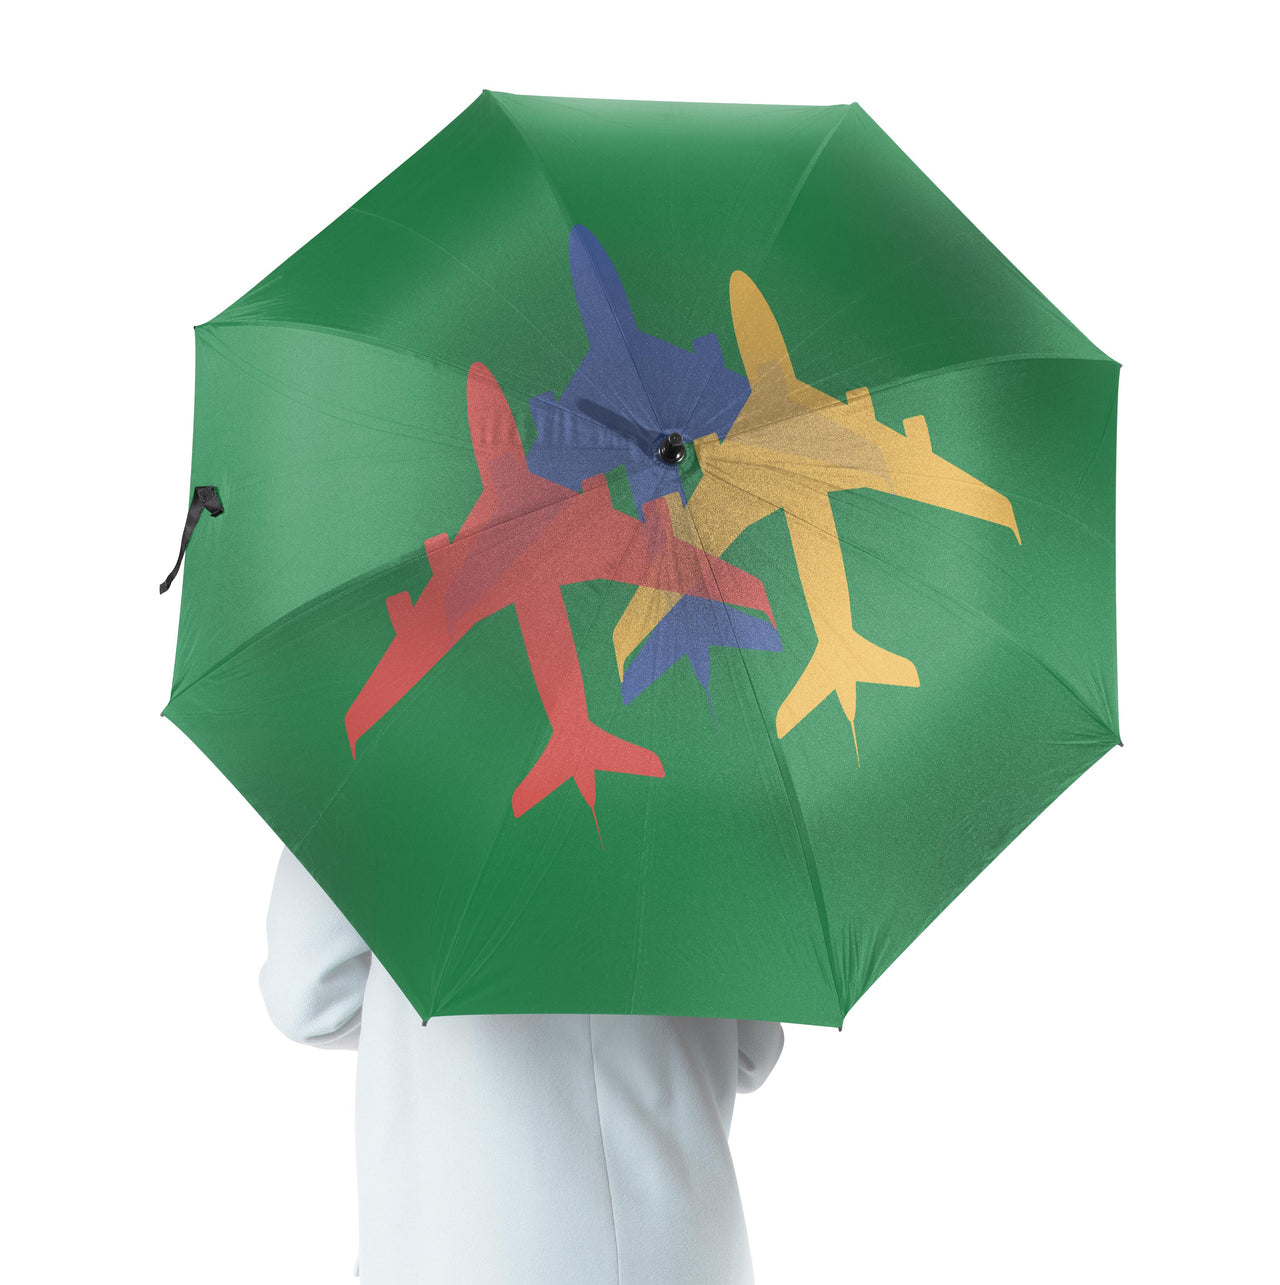 Colourful 3 Airplanes Designed Umbrella